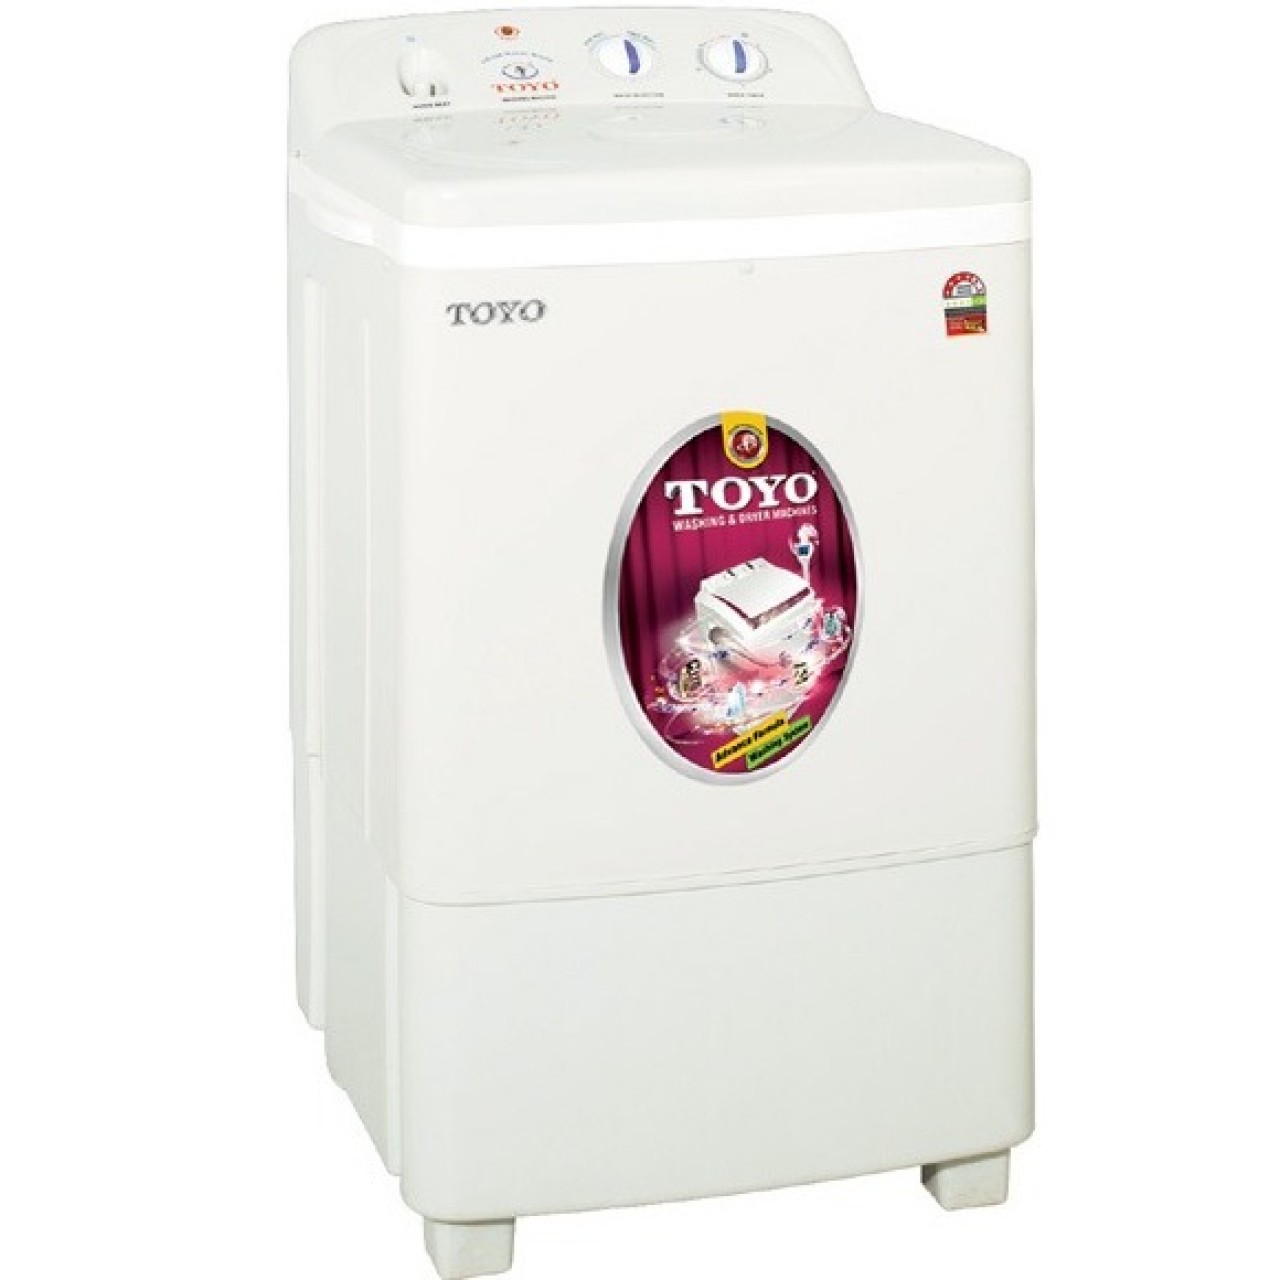 Toyo Single Tub Washing Machine Tw-666 - Capacity 8Kg